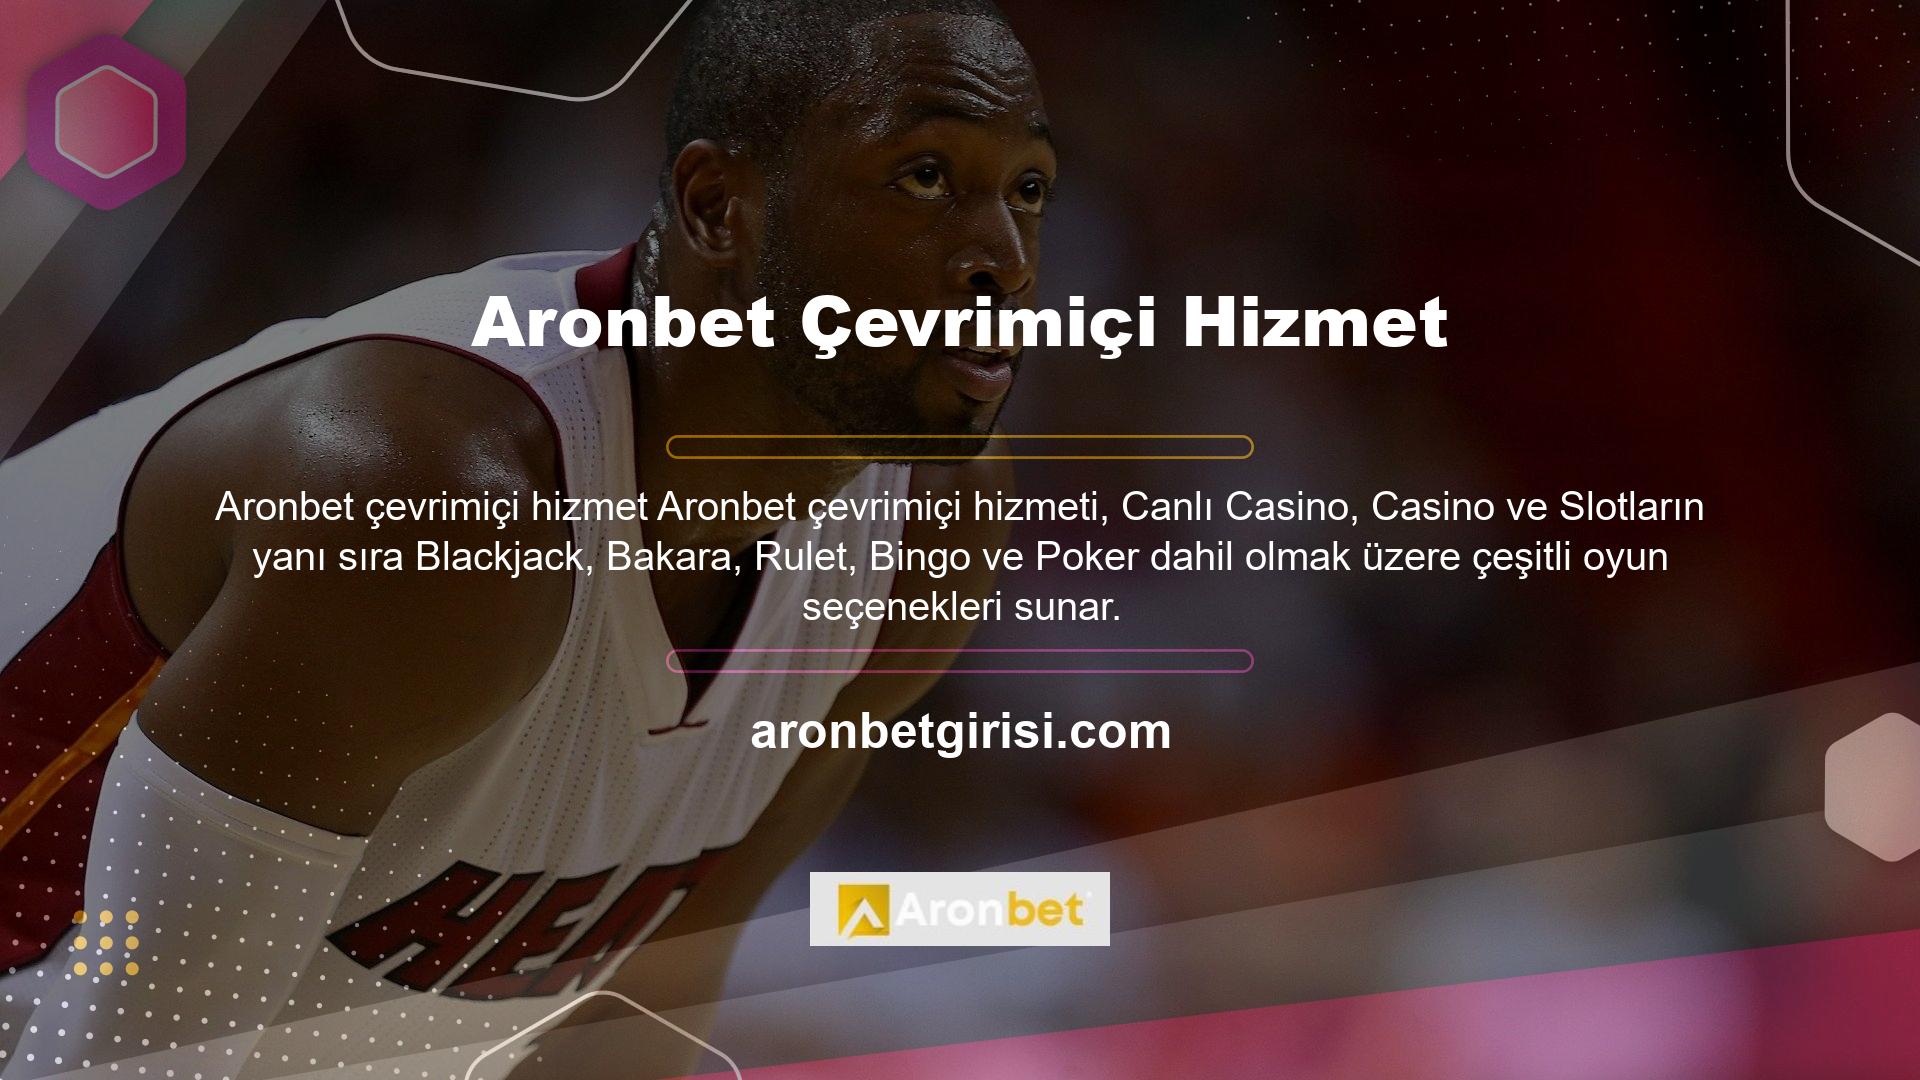 Türk yasaları, Aronbet web sitesini ticari amaçlarla kullanmasını, bilgi verme yetenekleri, lisans sertifikaları ve oyun pazarına ilişkin anlayış nedeniyle yasaklamaktadır